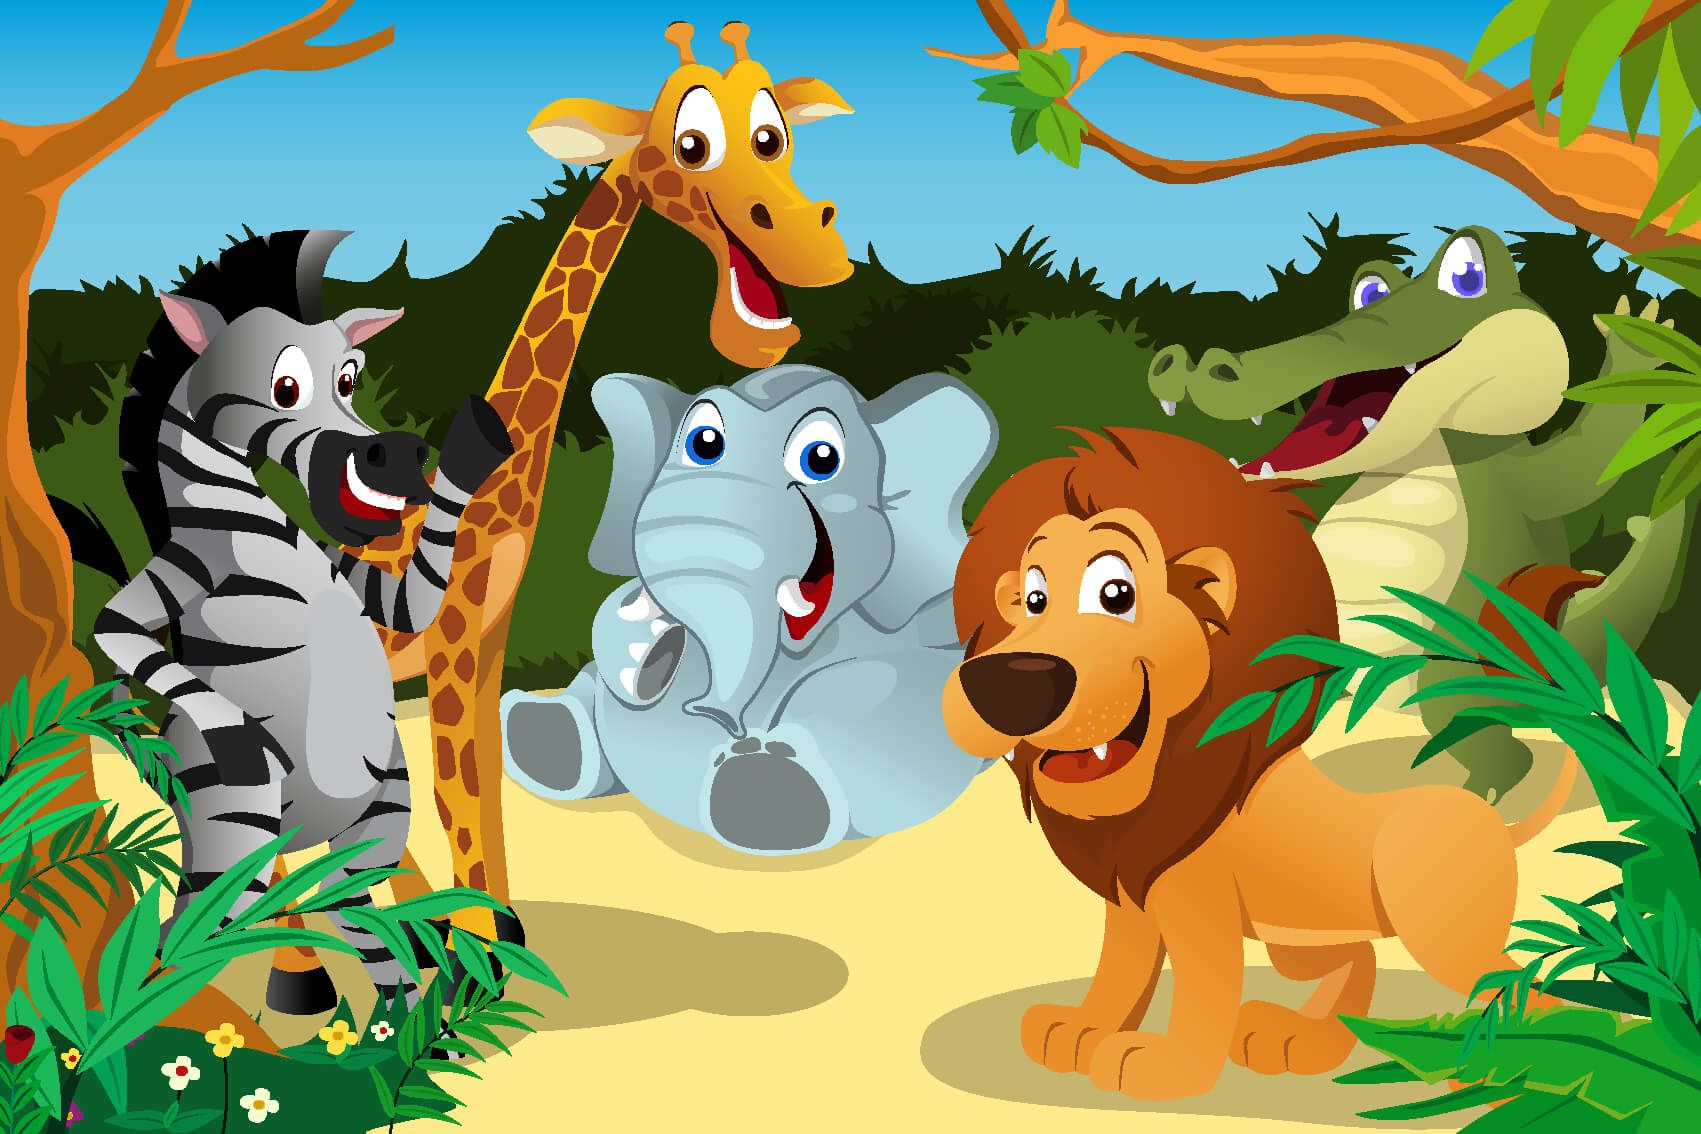 Animaux de Safari - Animaux sauvages joyeux - Chambre des enfants